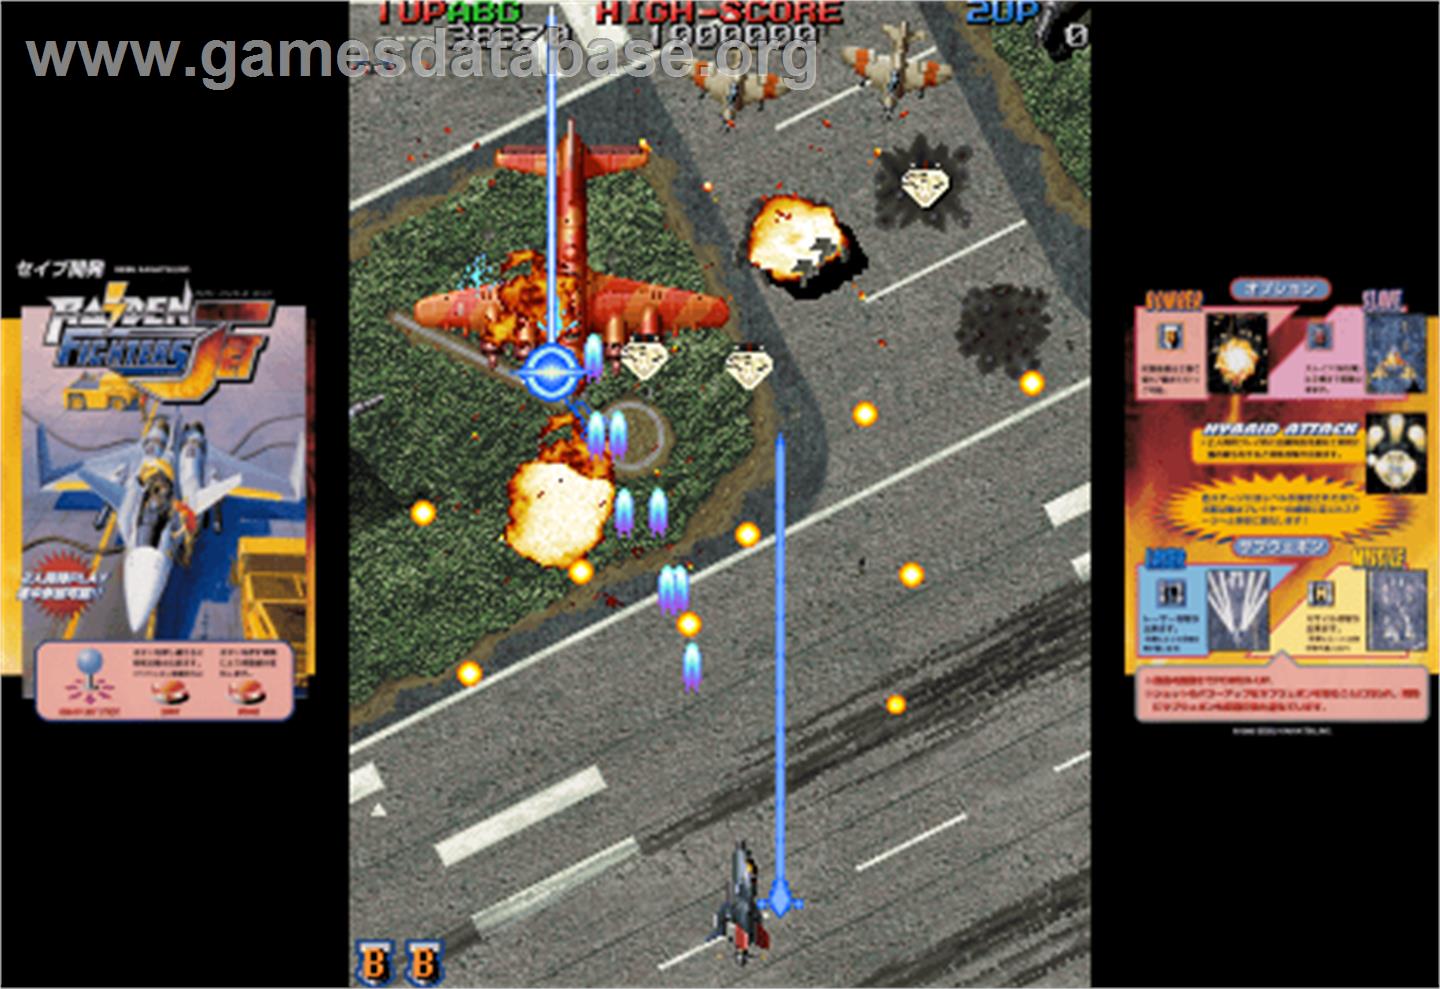 Raiden Fighters Jet - 2000 - Arcade - Artwork - Artwork